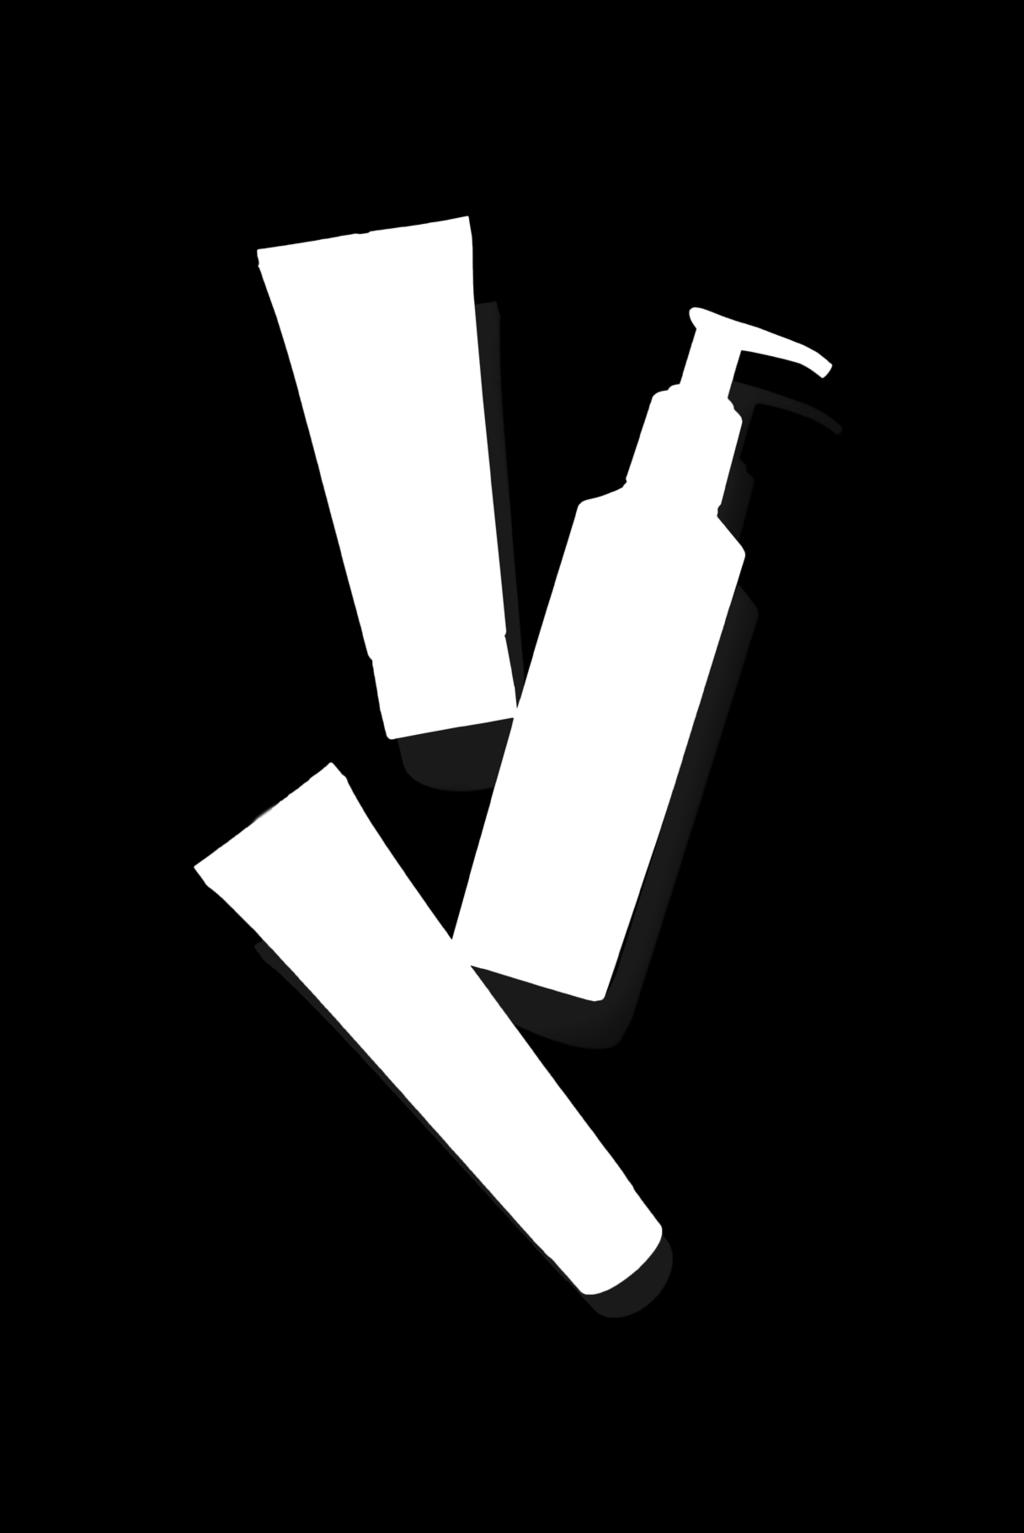 El juego incluye tres productos para las manos: una crema protectora